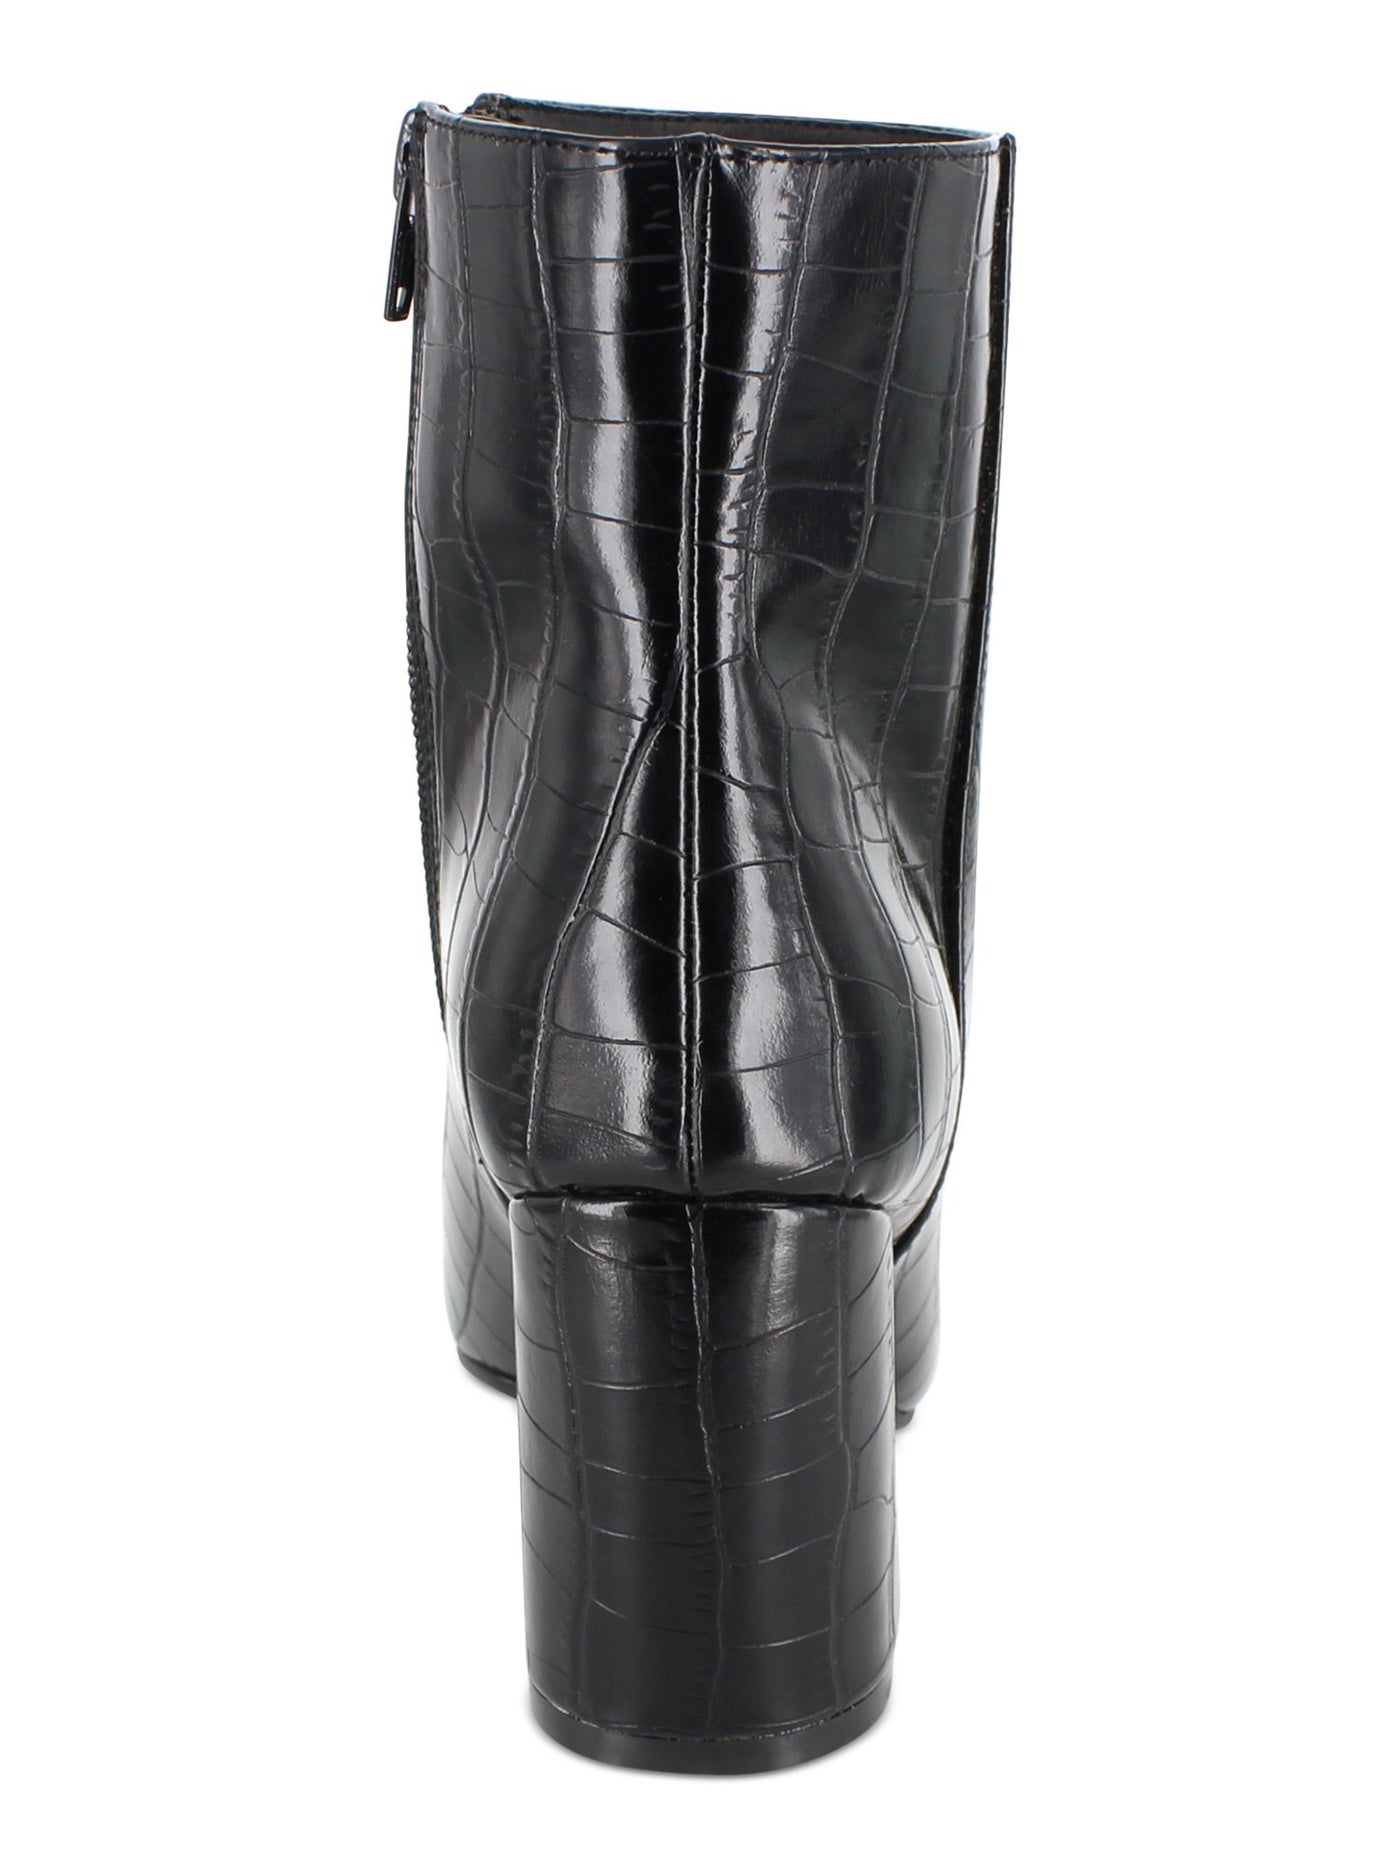 ESPRIT Womens Black Pointed Toe Block Heel Zip-Up Booties 7.5